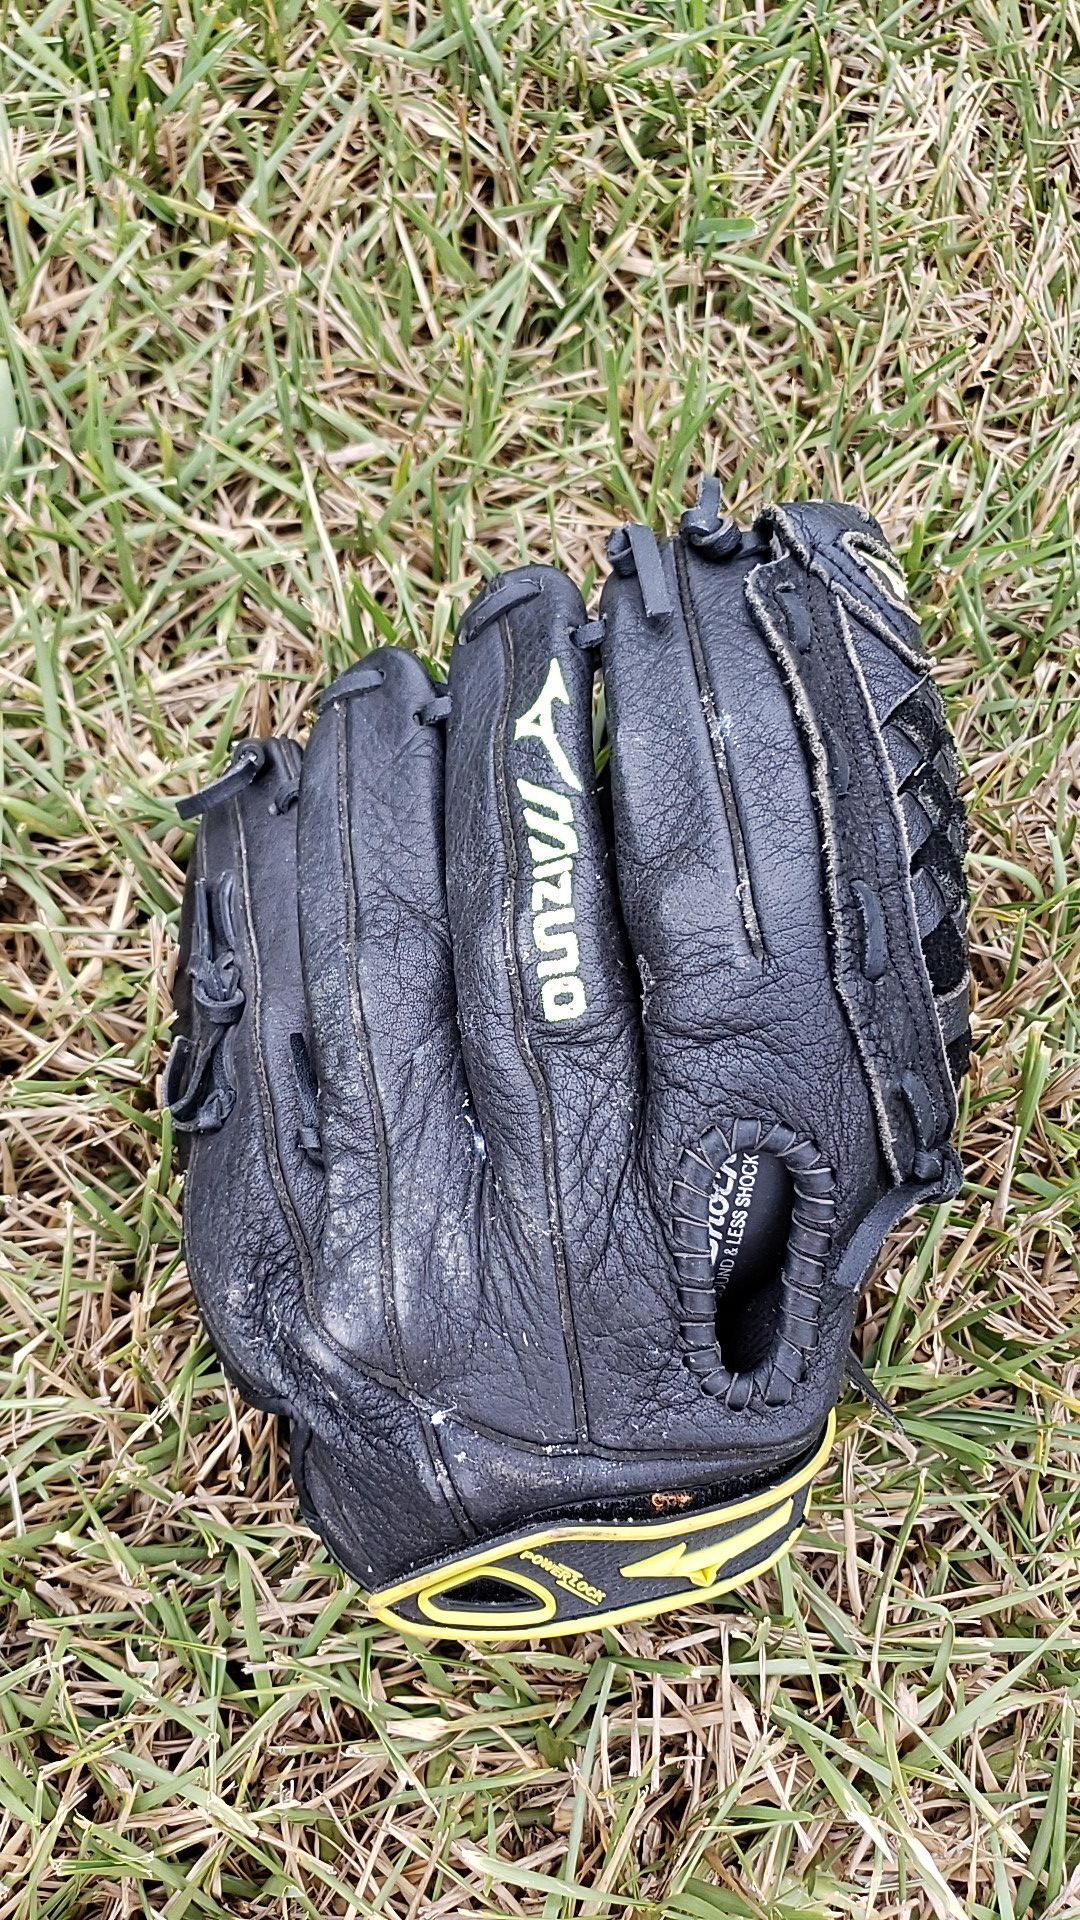 Softball glove and softball